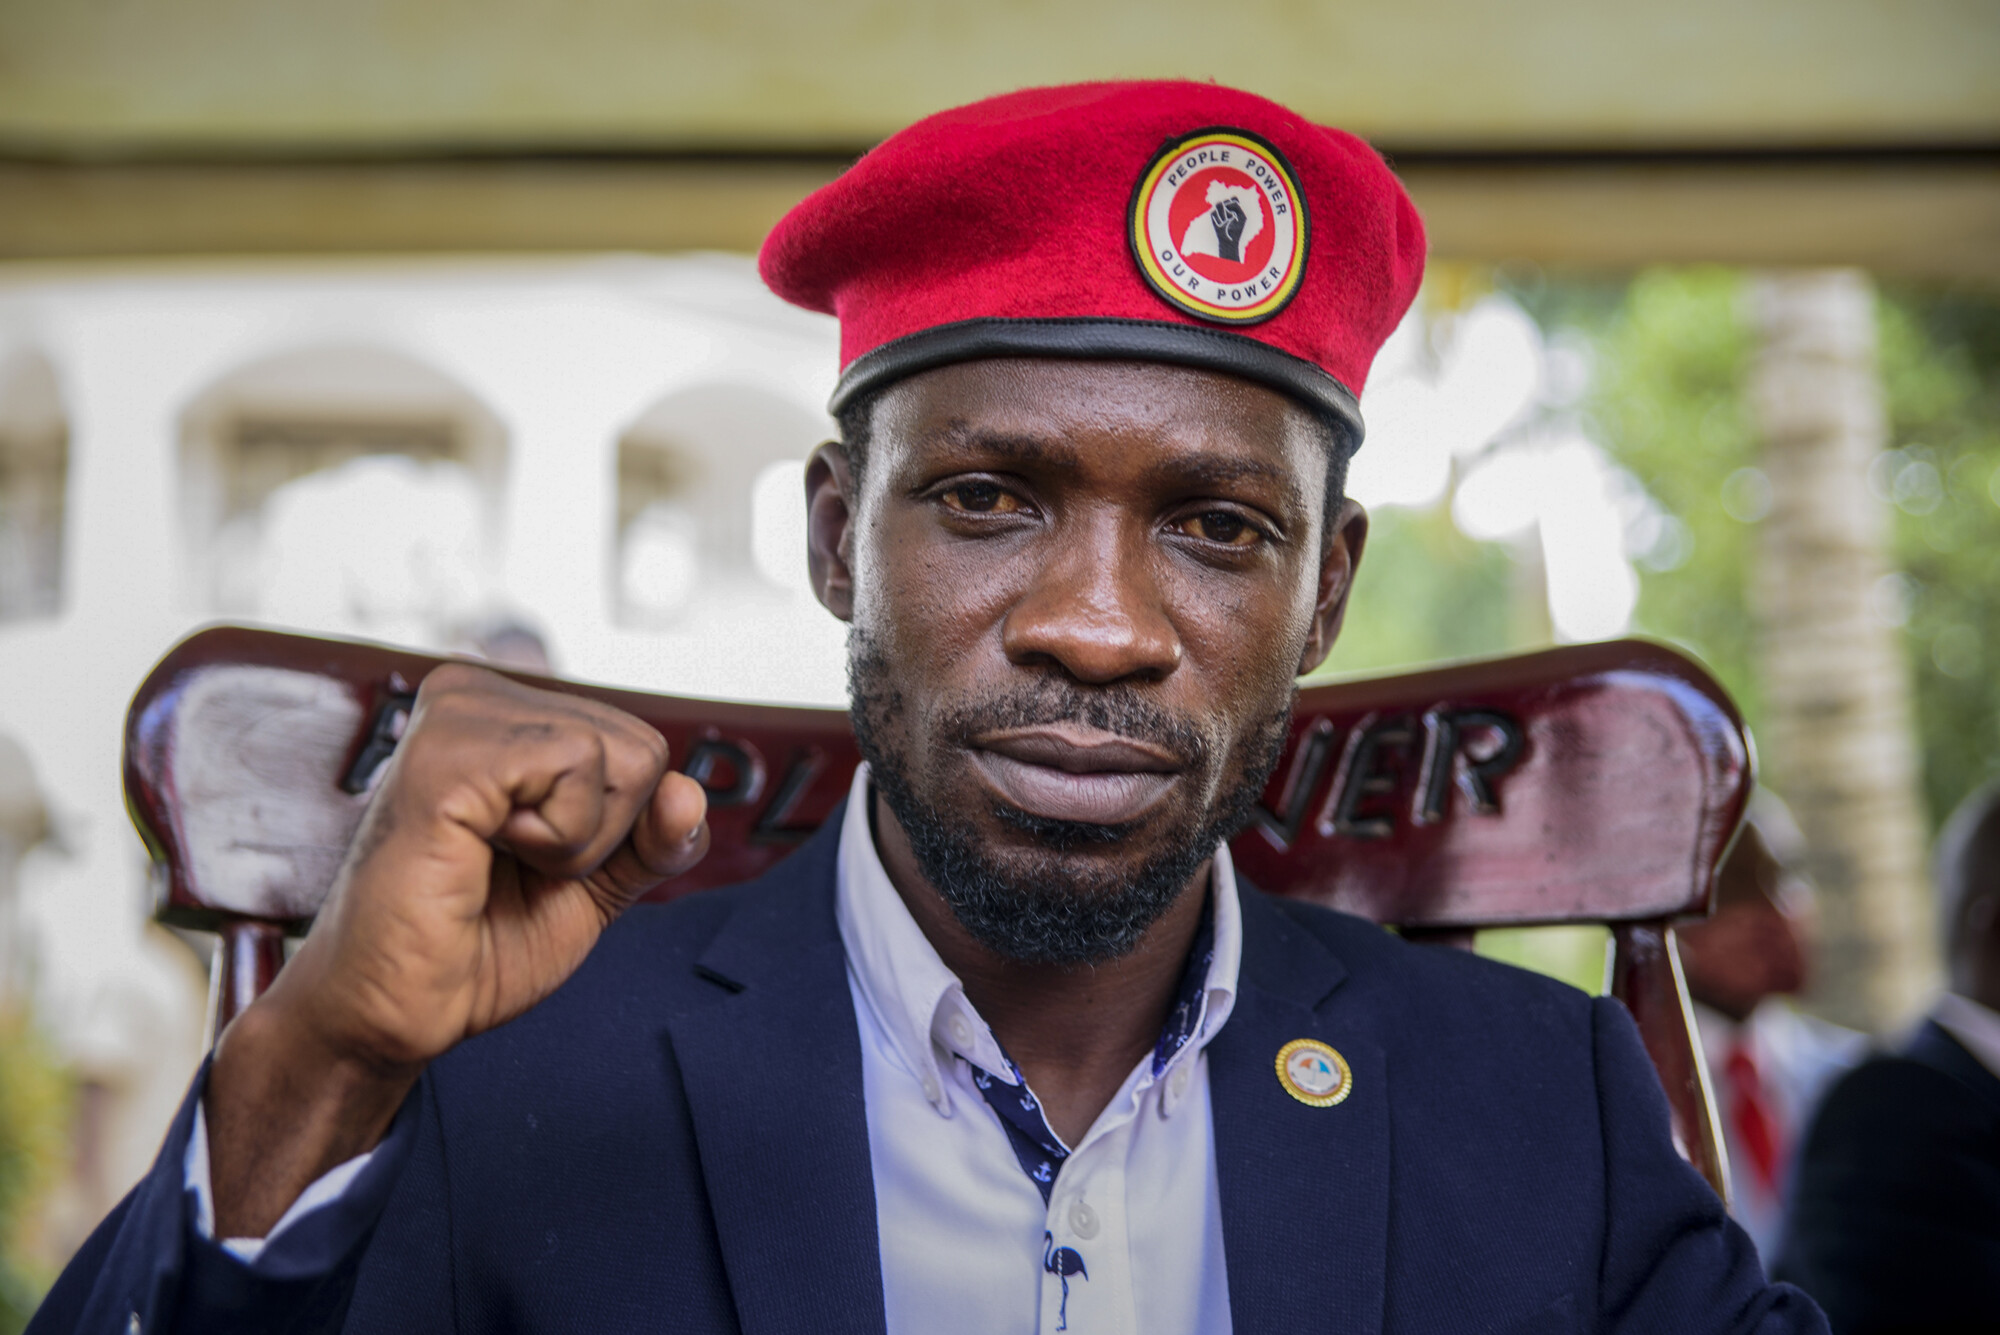 Uganda’s Bobi Wine Arrested While Protesting in the Capital